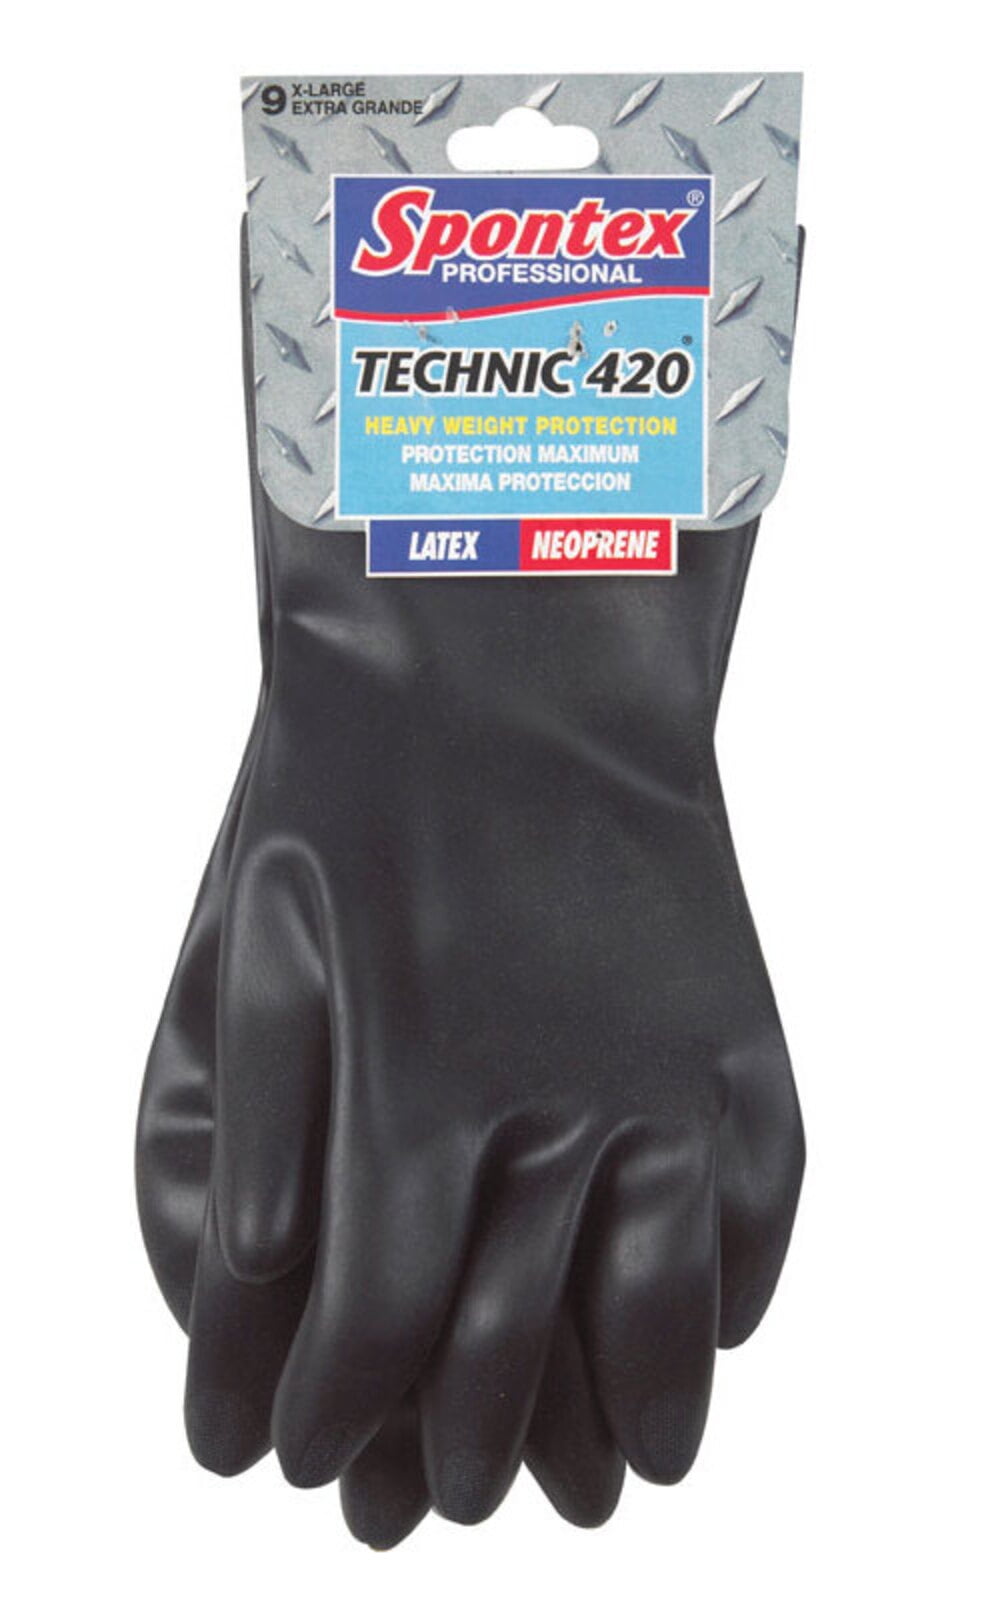 Spontex Neoprene Gloves Industrial Strength Neoprene Over Natural Latex Large 